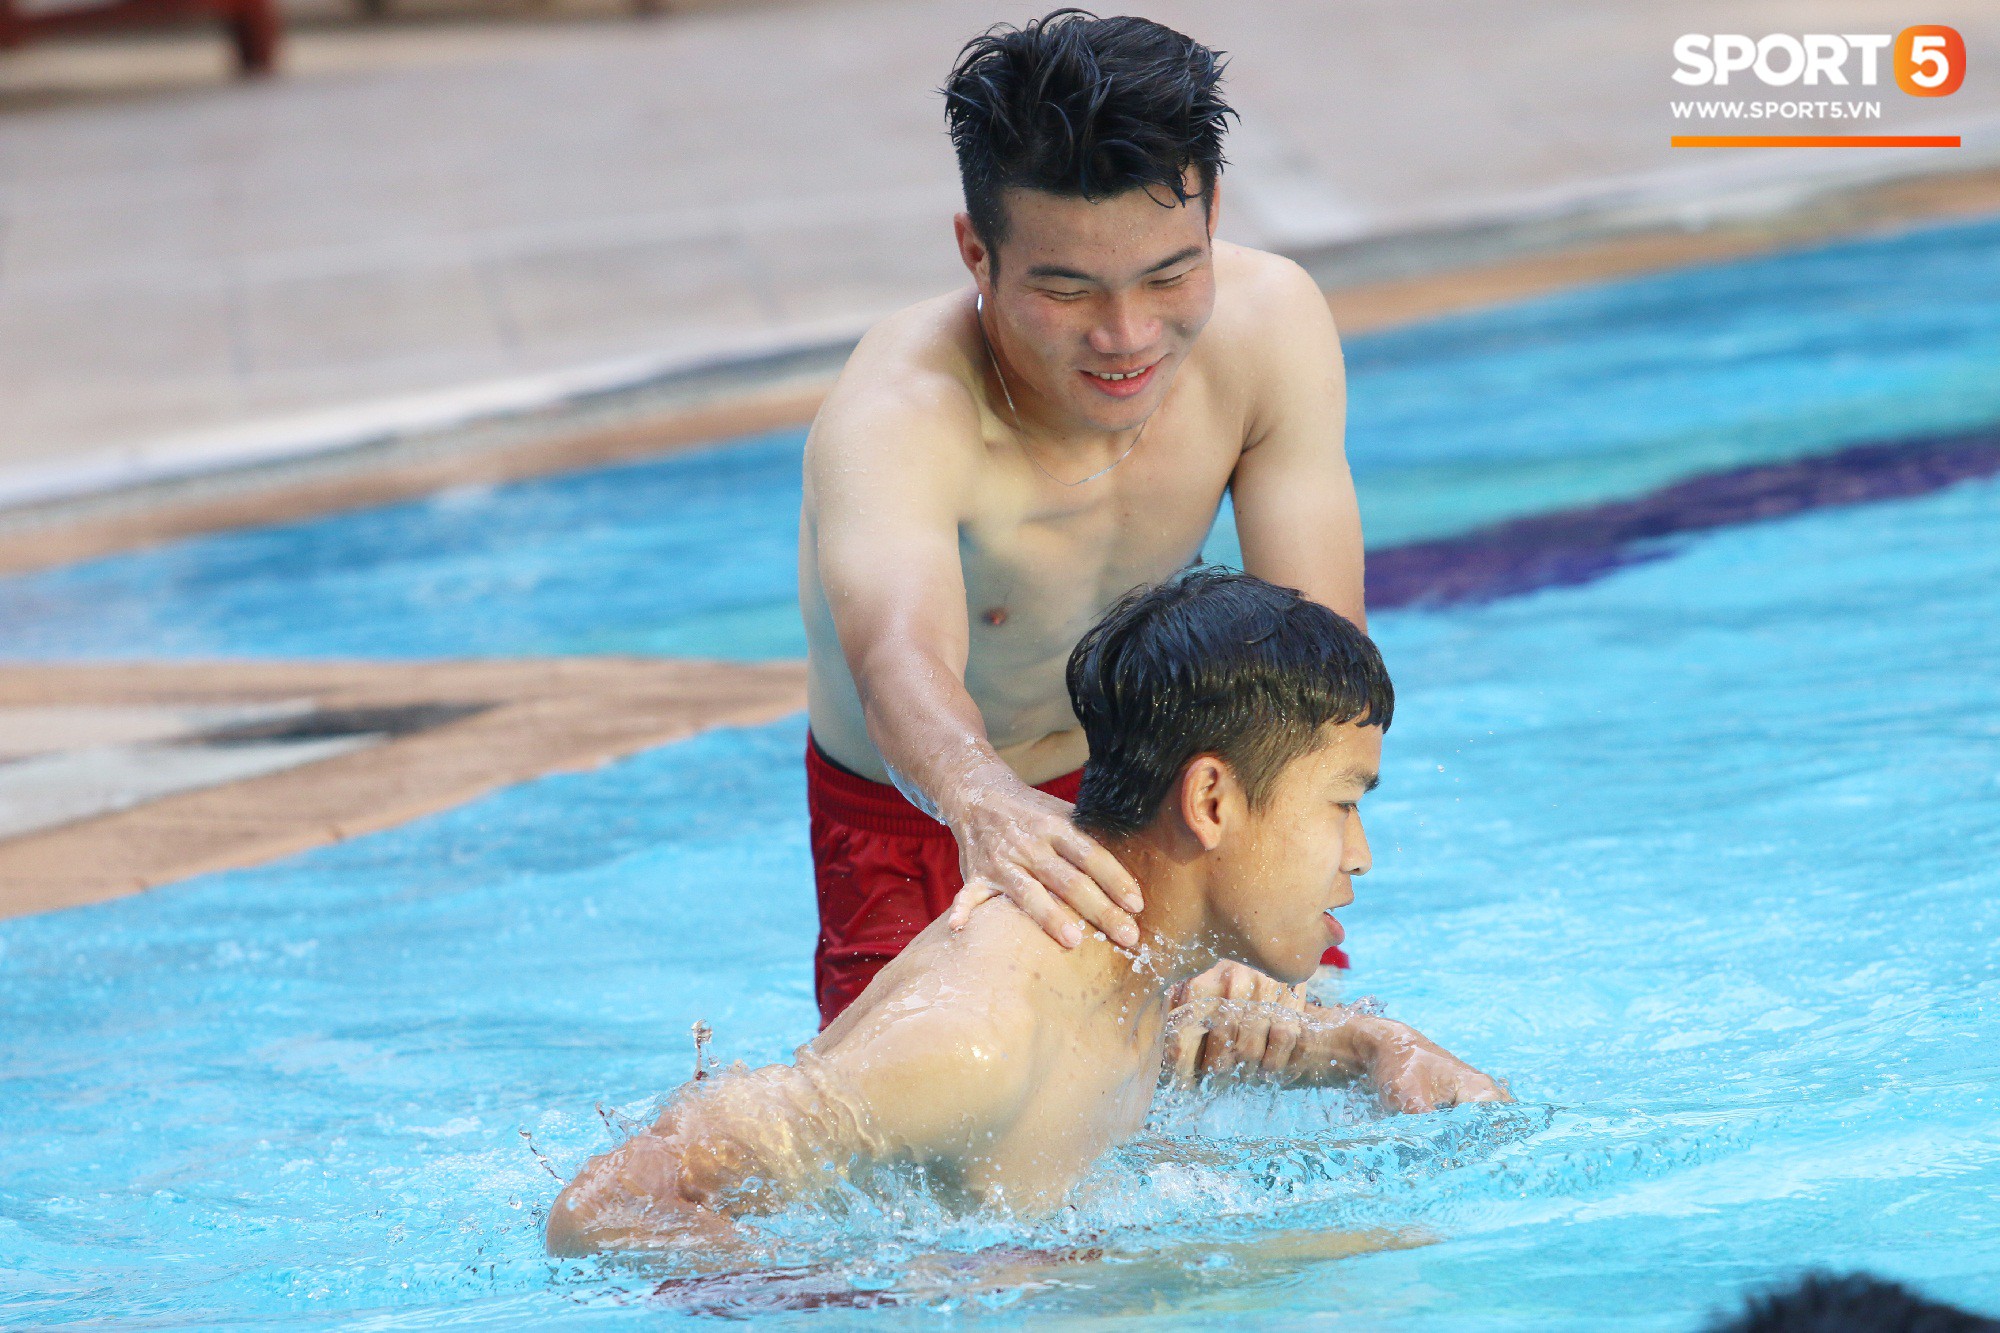 Chẳng kém các đàn anh, U22 Việt Nam cũng có rất nhiều cực phẩm khi vui đùa bên bể bơi-12